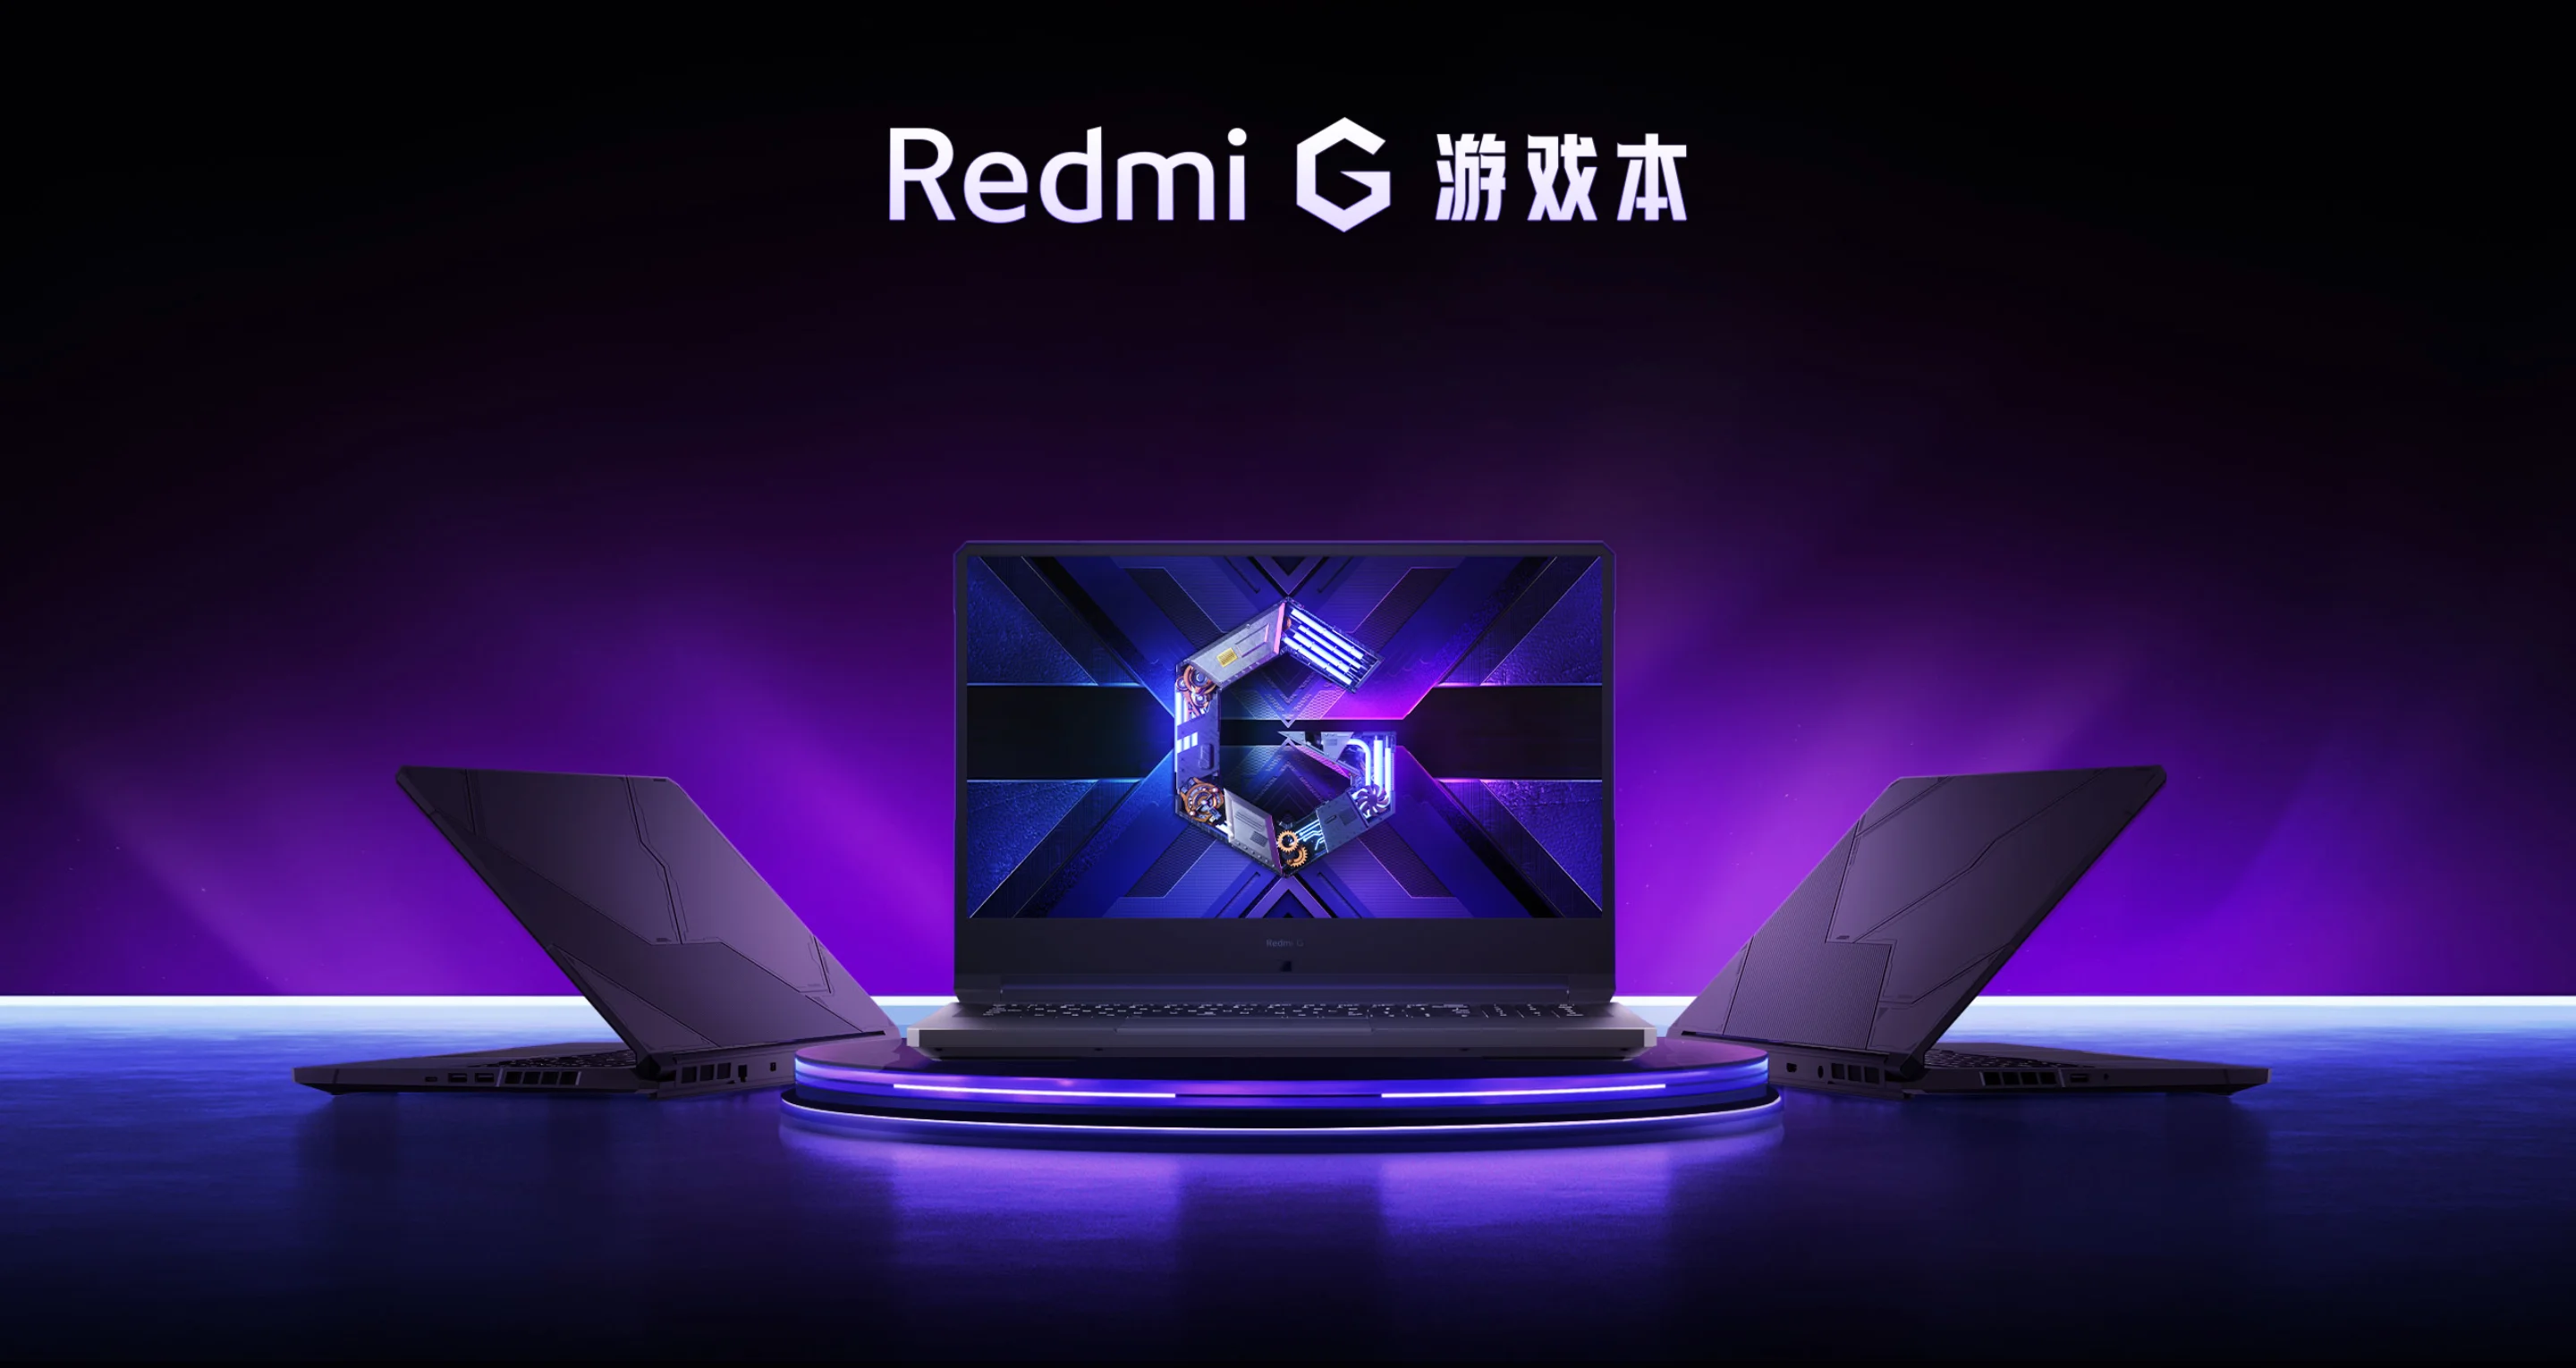 Xiaomi представила бюджетный игровой ноутбук Redmi G - фото 1